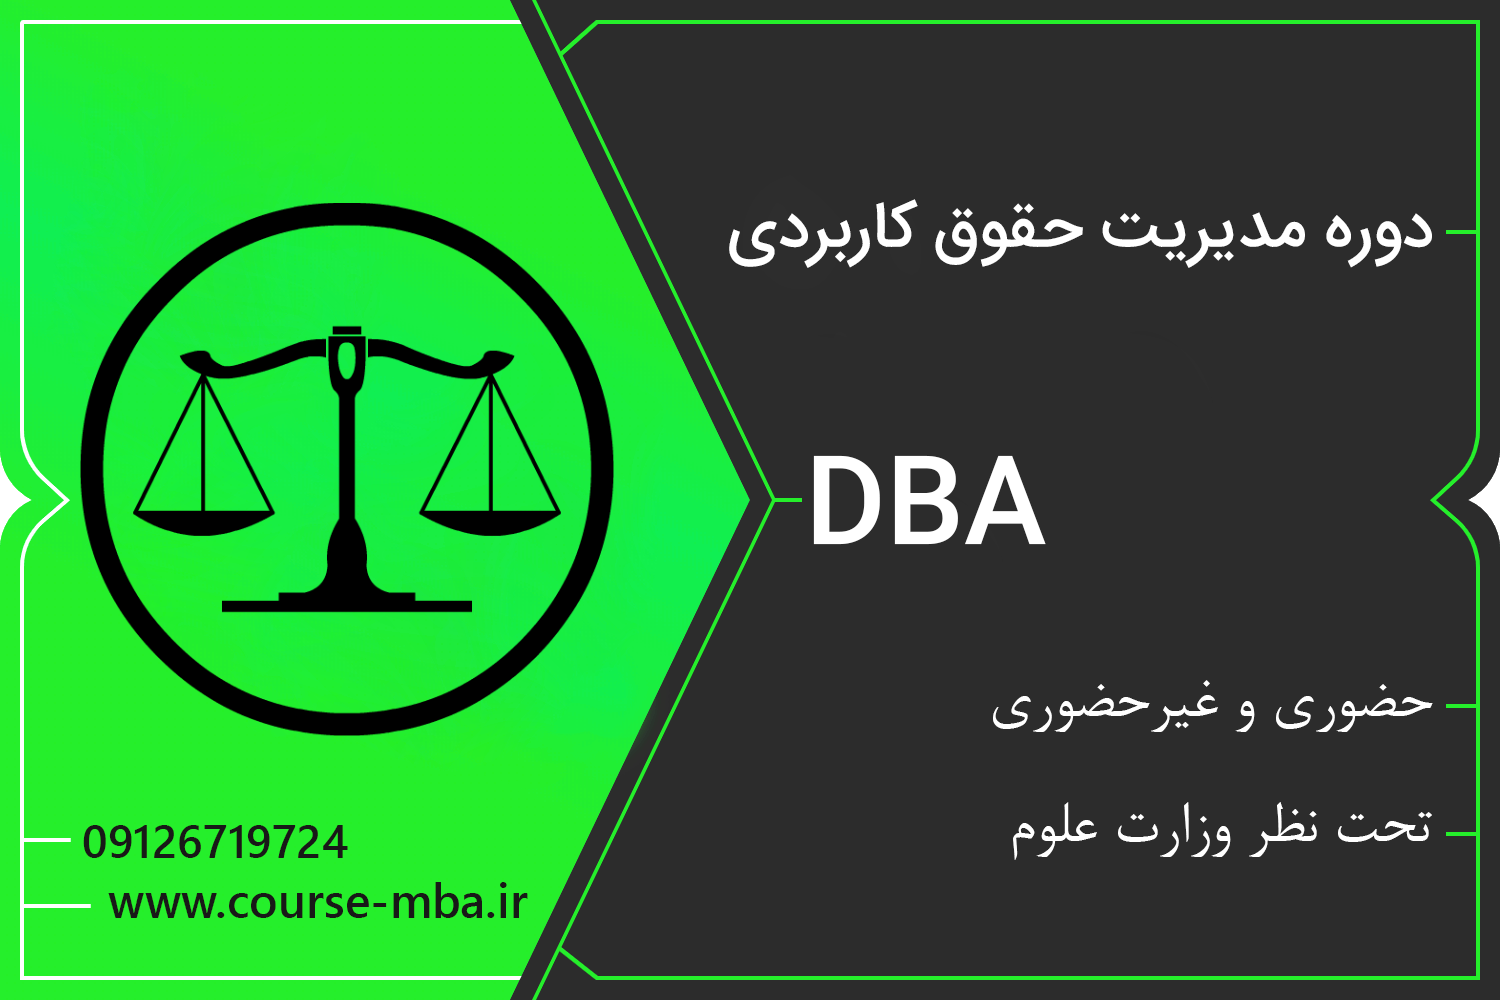 دوره DBA حقوق کاربردی | مدرک DBA حقوق کاربردی